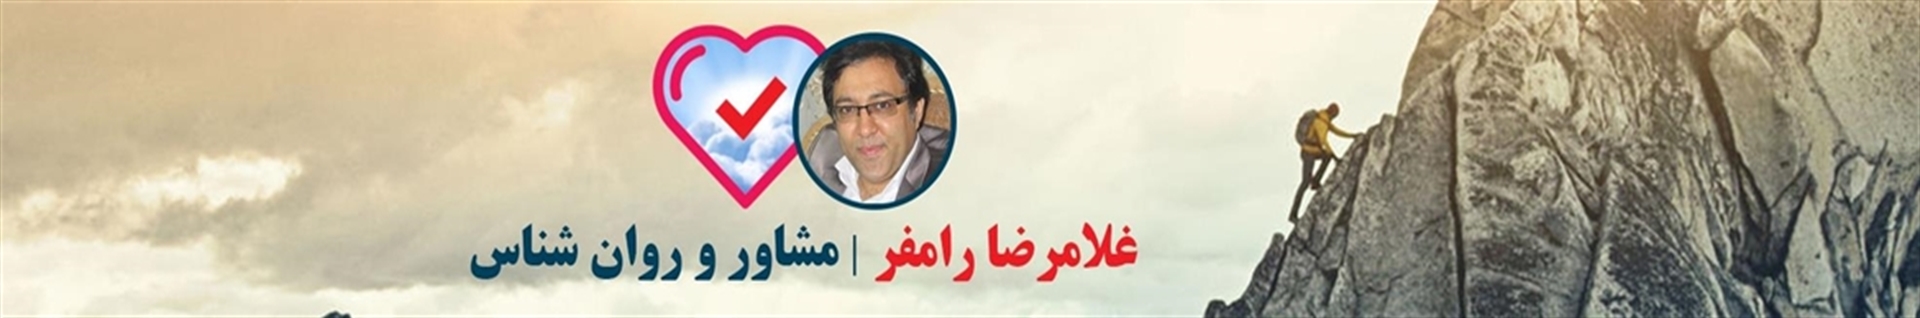 غلامرضا رامفر - مشاور و روانشناس در کرج